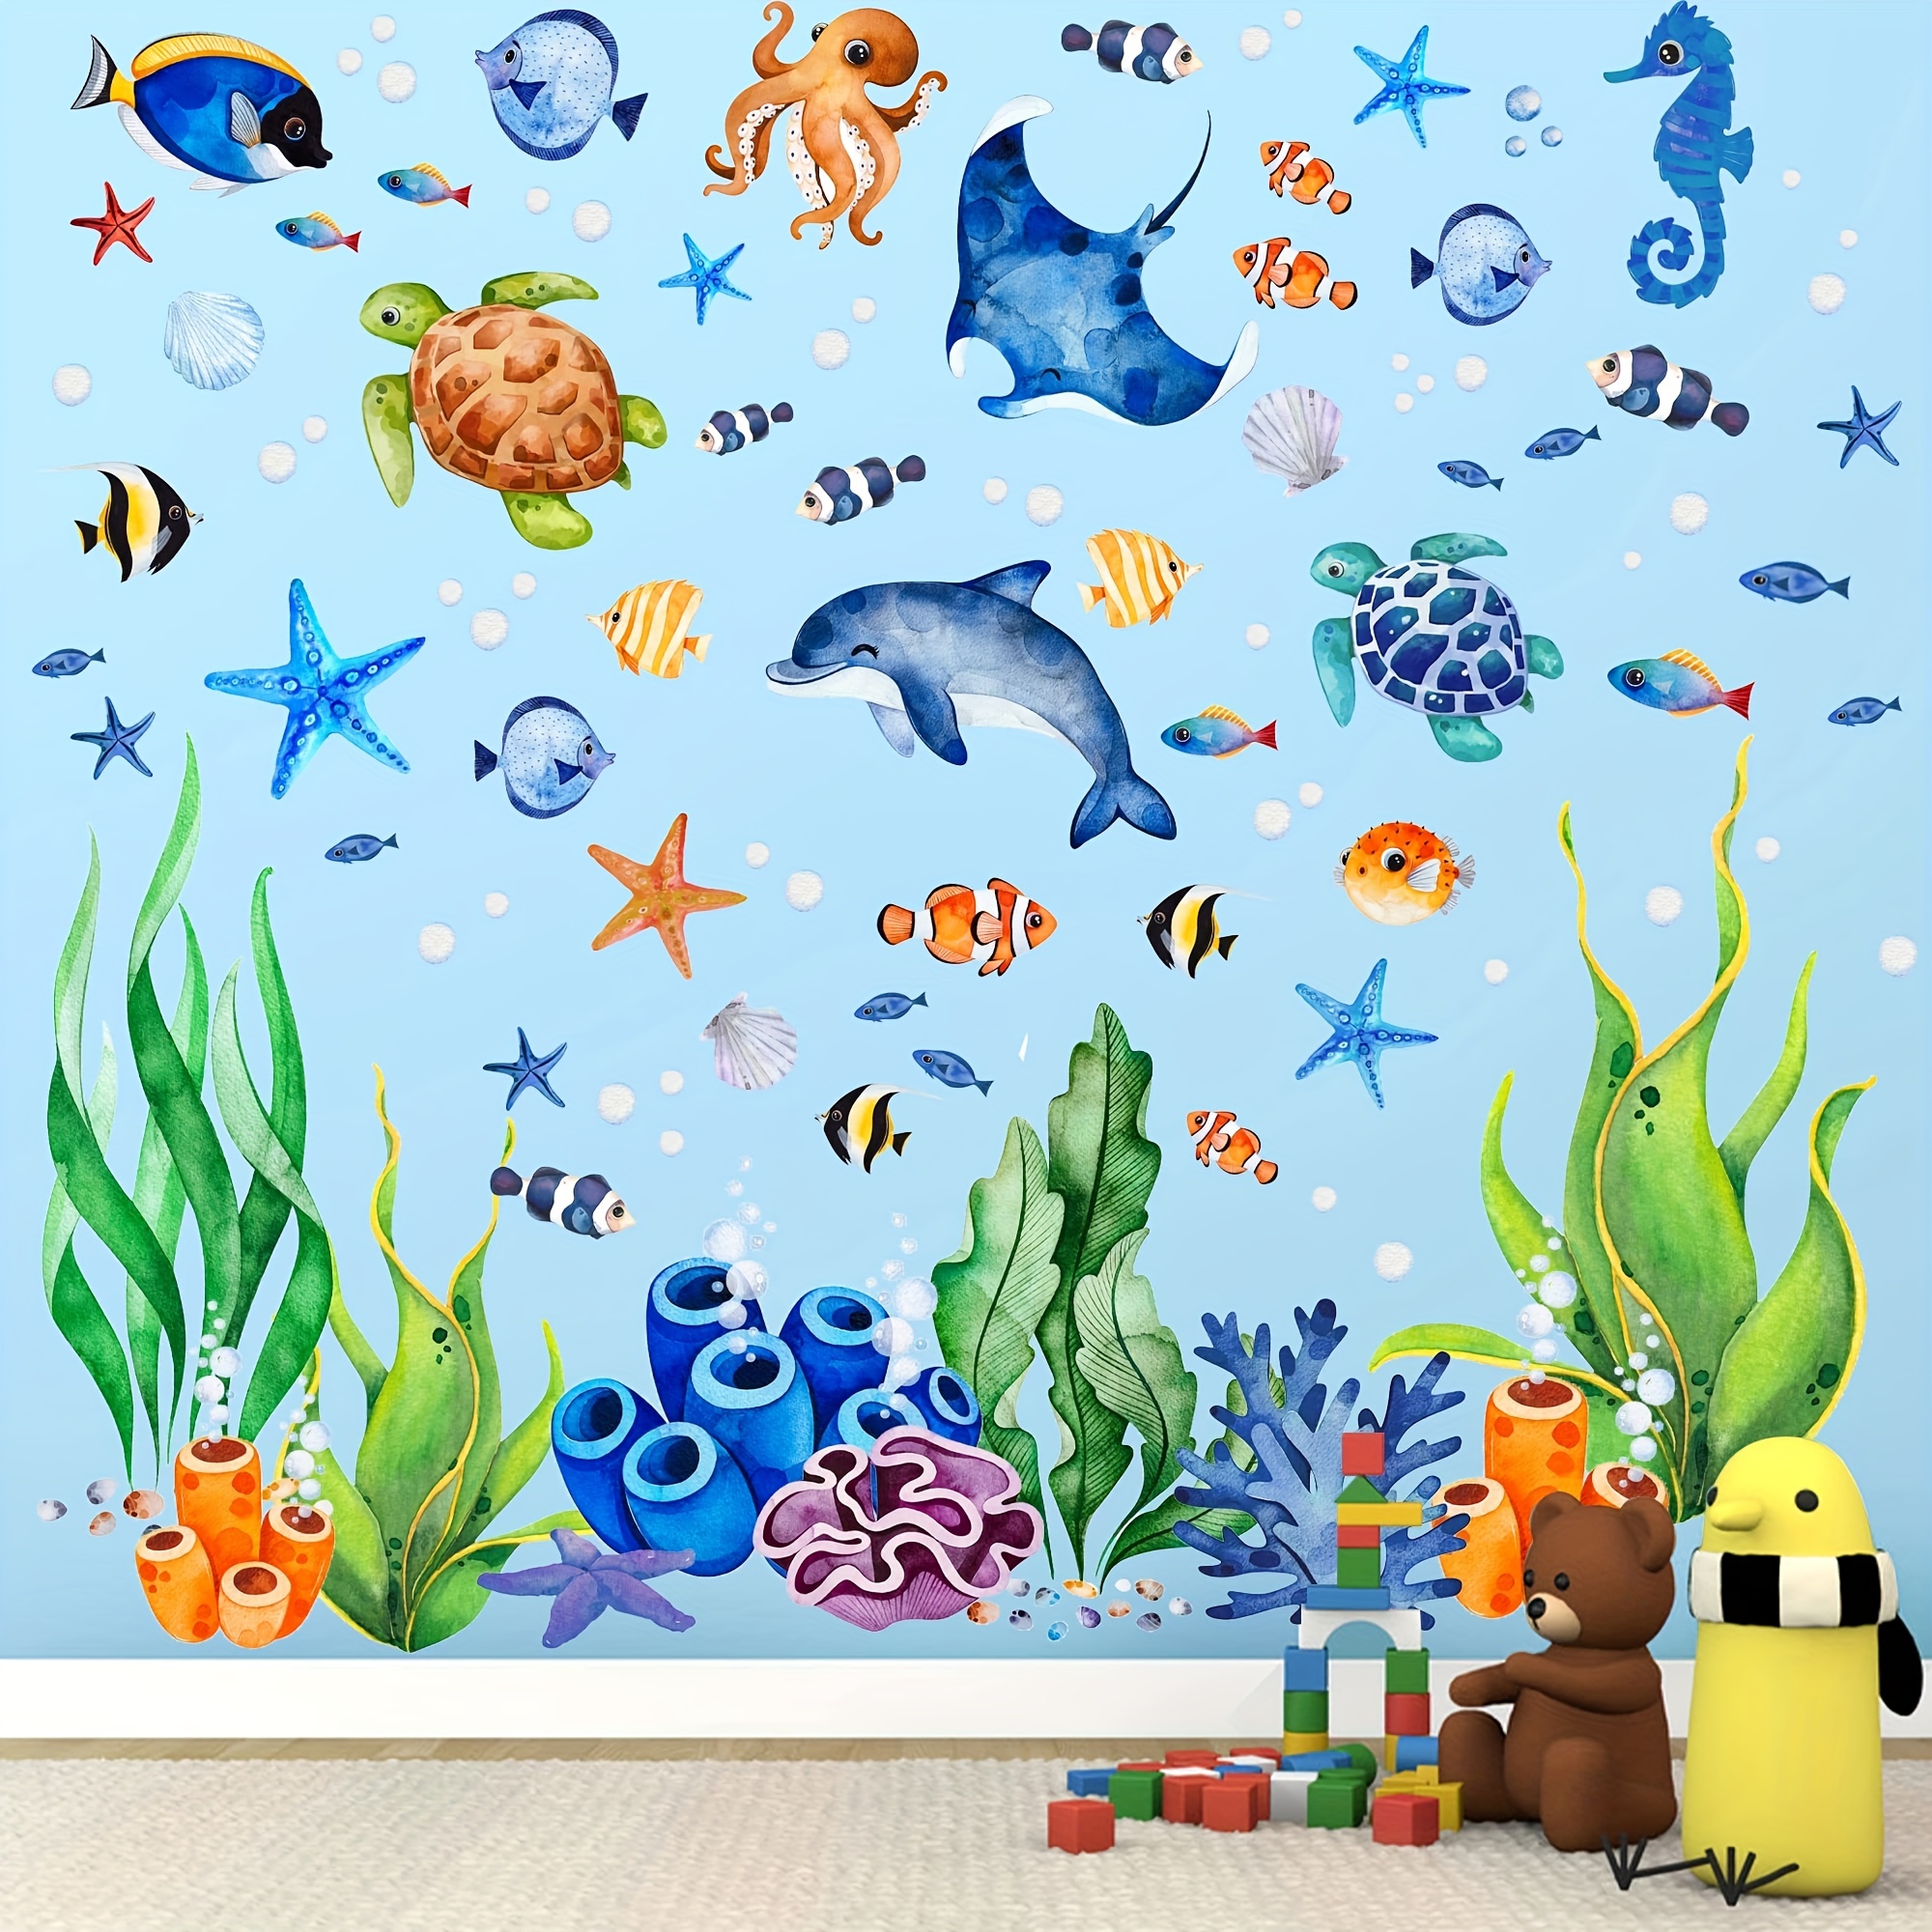 Décoration murale avec des formes de poissons